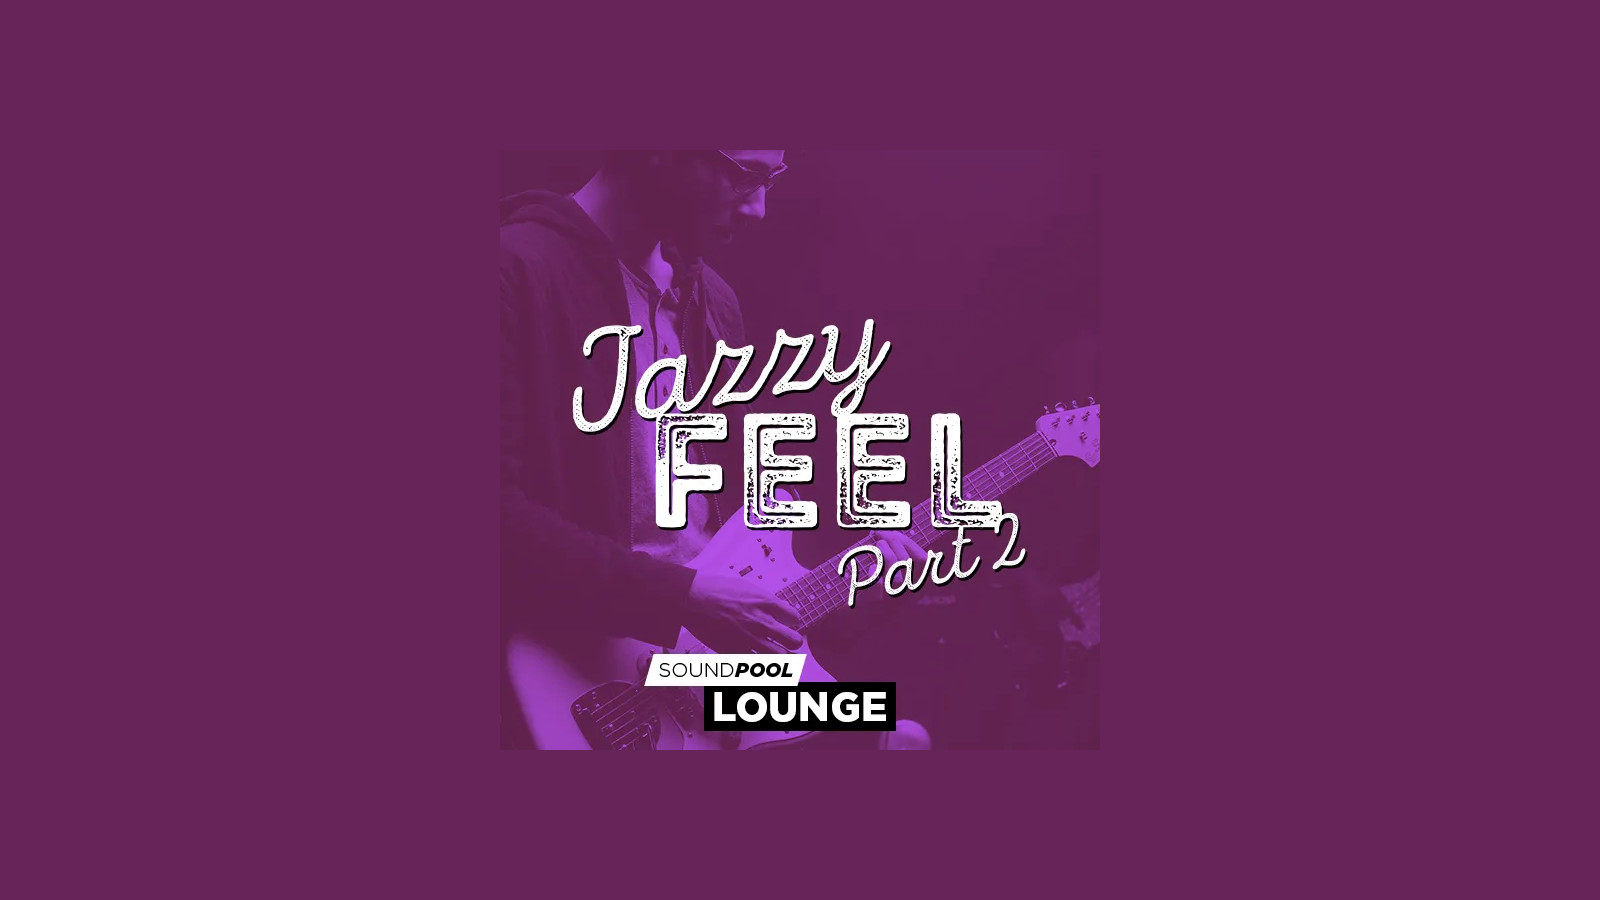 MAGIX Soundpool Jazzy Feel Part 2 ProducerPlanet CD Key 5.65 usd